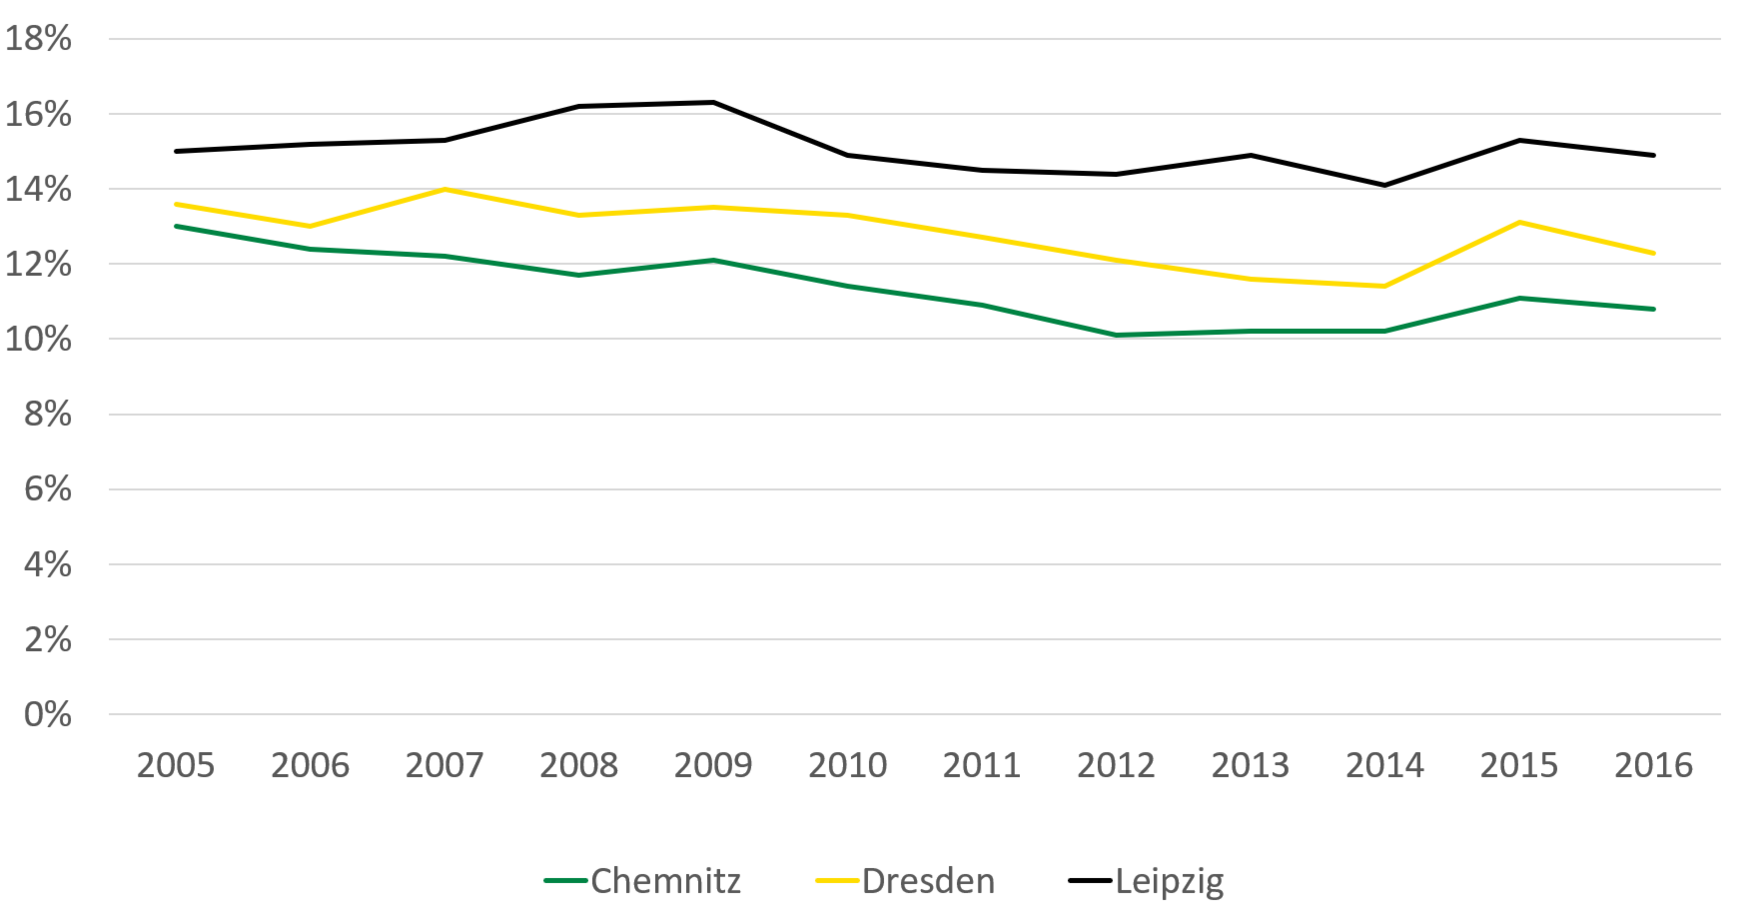 Am höchsten war die Armutsgefährdungsquote zwischen 2005 und 2016 in Leipzig mit 15 Prozent im Jahr 2005 und 14,9 Prozent im Jahr 2016, gefolgt von Dresden mit 13,6 Prozent im Jahr 2005 und 12,3 Prozent im Jahr 2016. Am geringsten war die Armutsgefährdungsquote in Chemnitz mit 13 Prozent im Jahr 2005 und 10,8 Prozent im Jahr 2016.